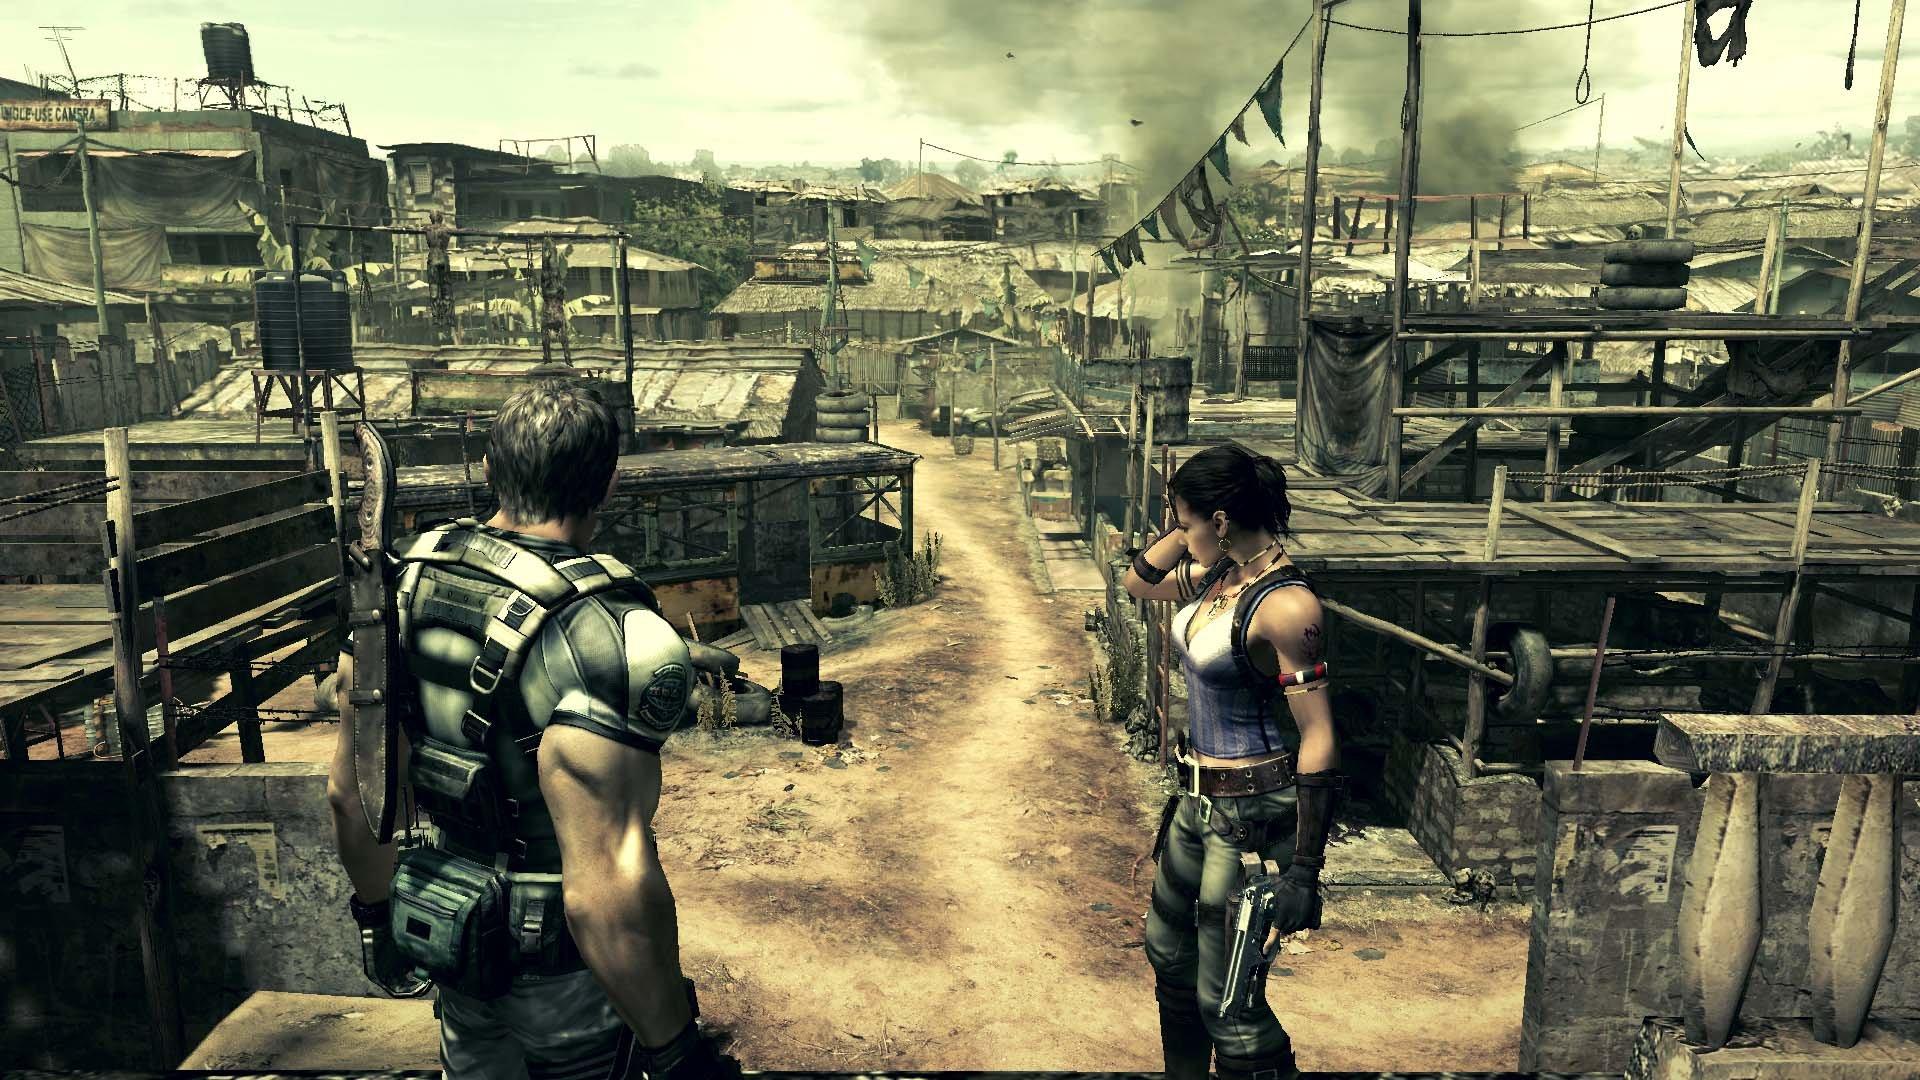 Buy Resident Evil 5